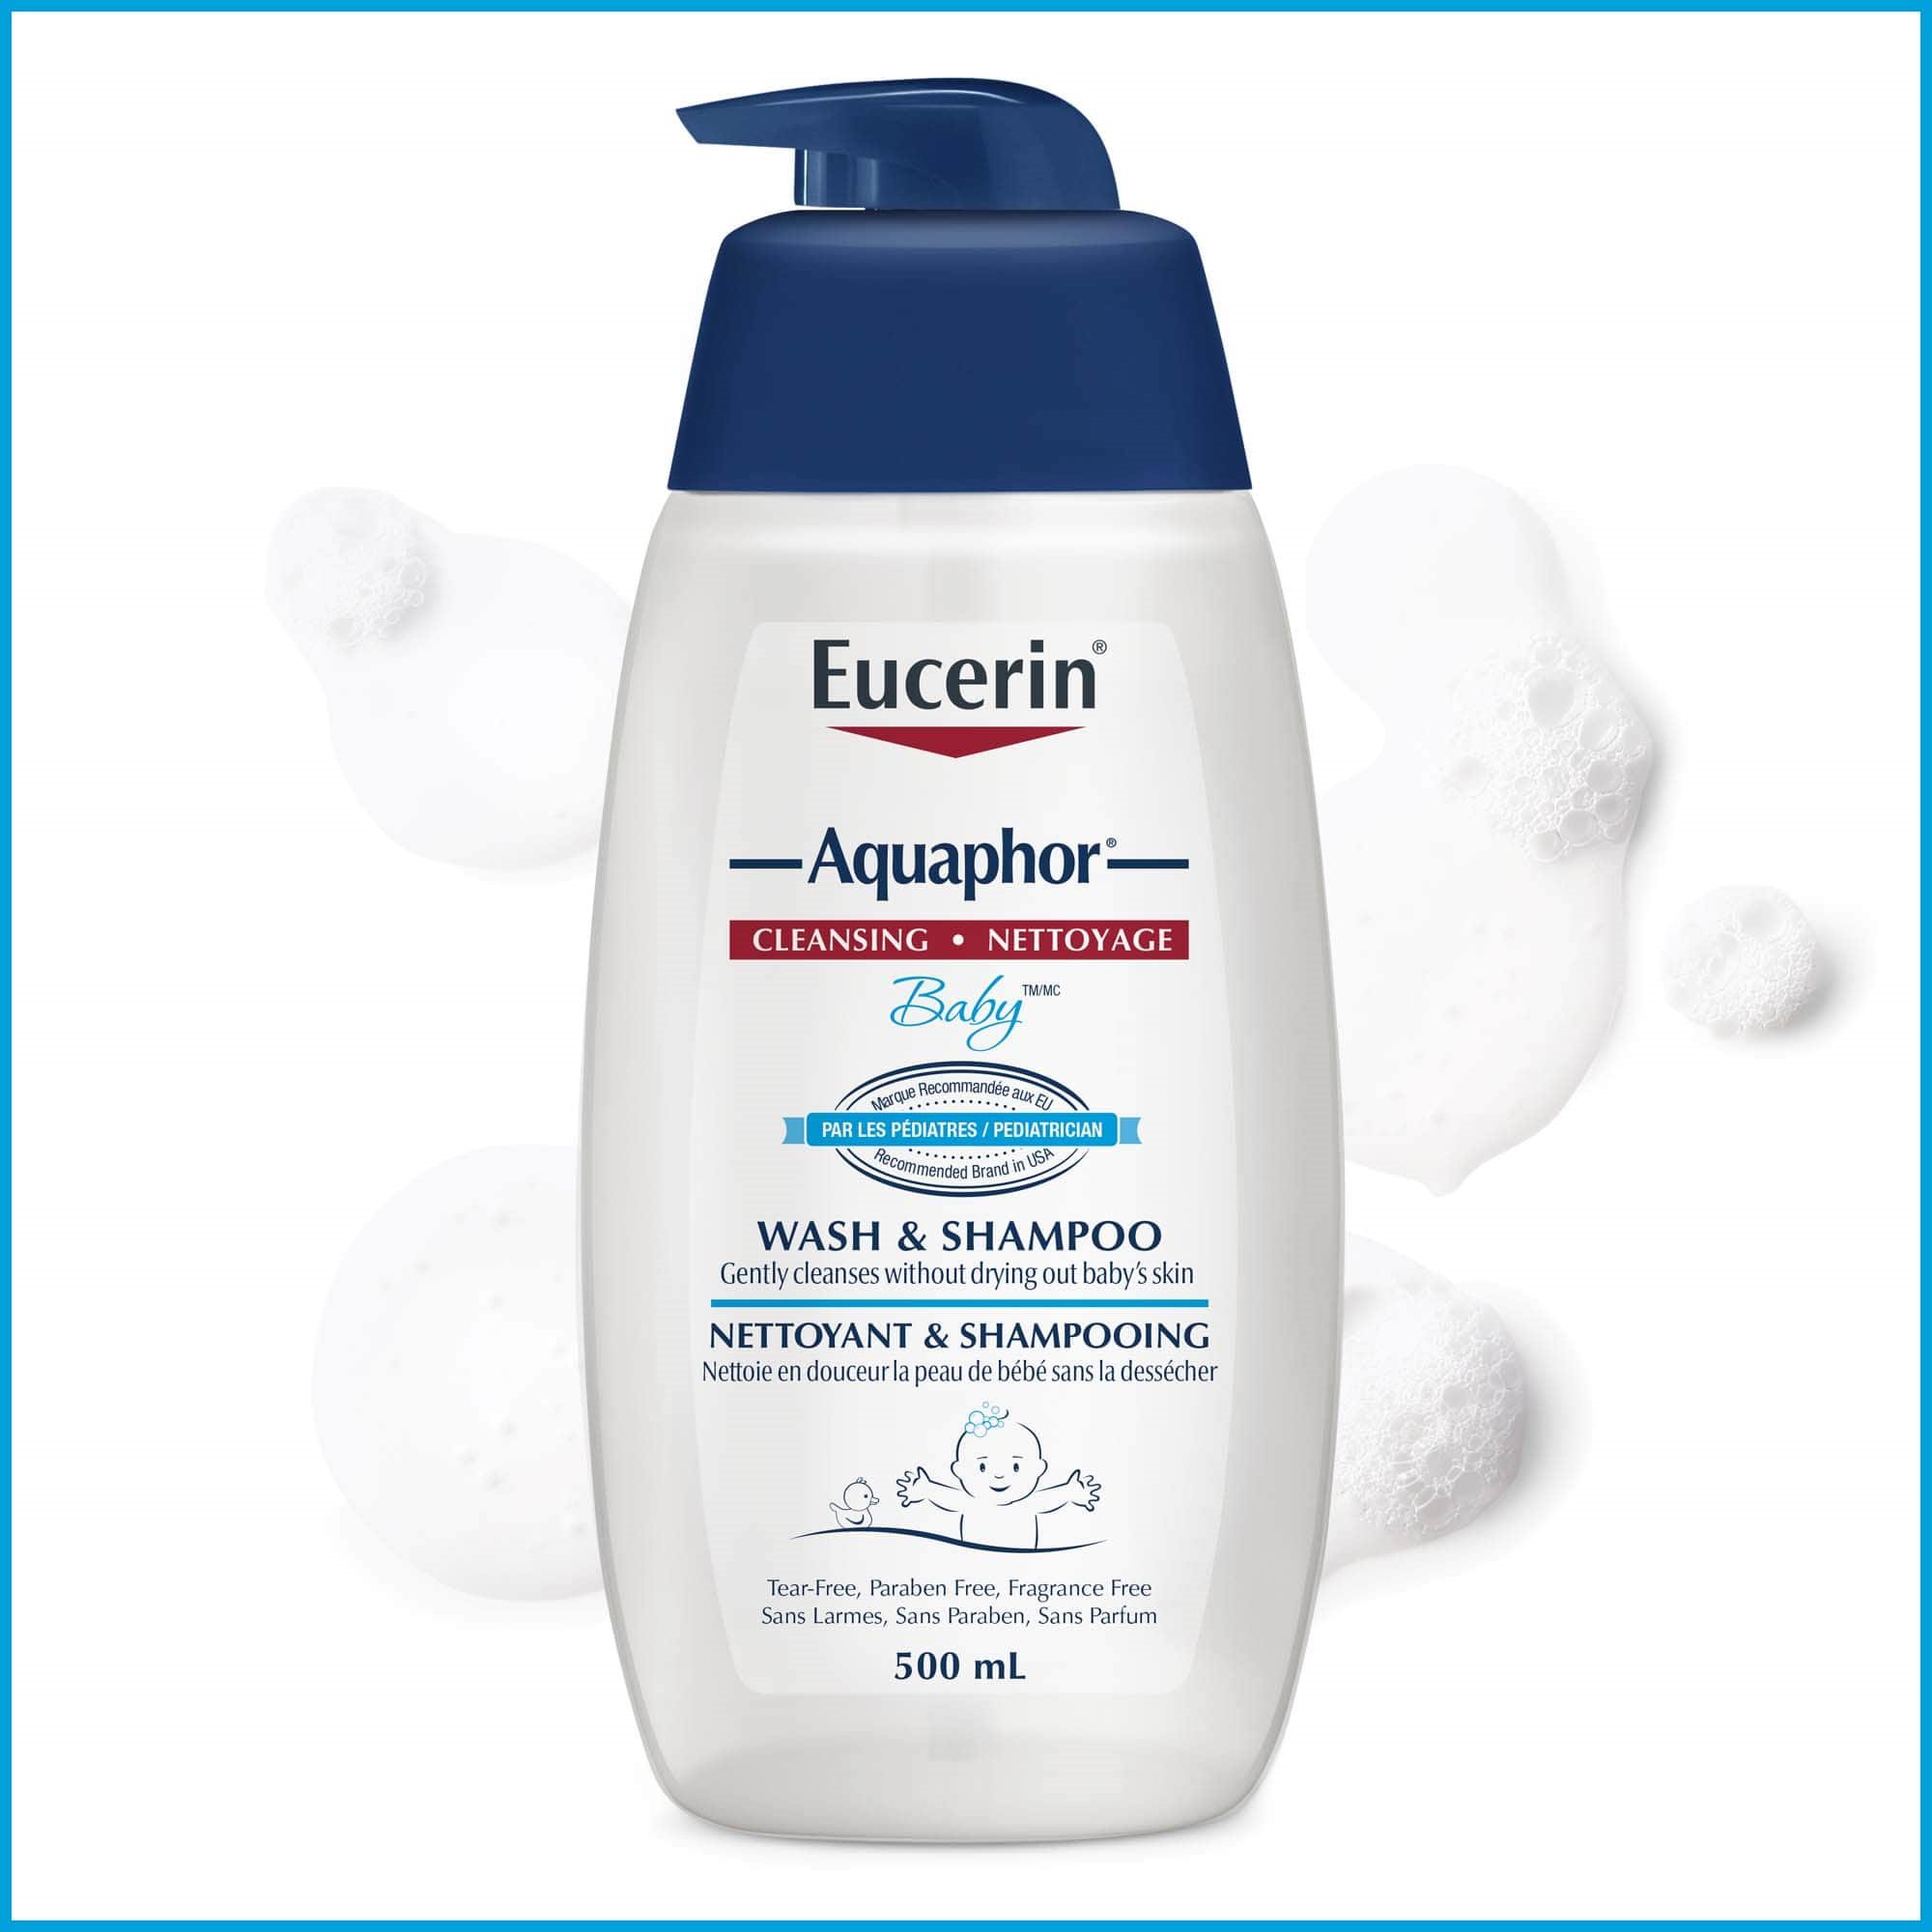 Bouteille de nettoyant et shampooing Eucerin Aquaphor Baby 500 ml avec éclaboussures du produit, sur fond blanc.